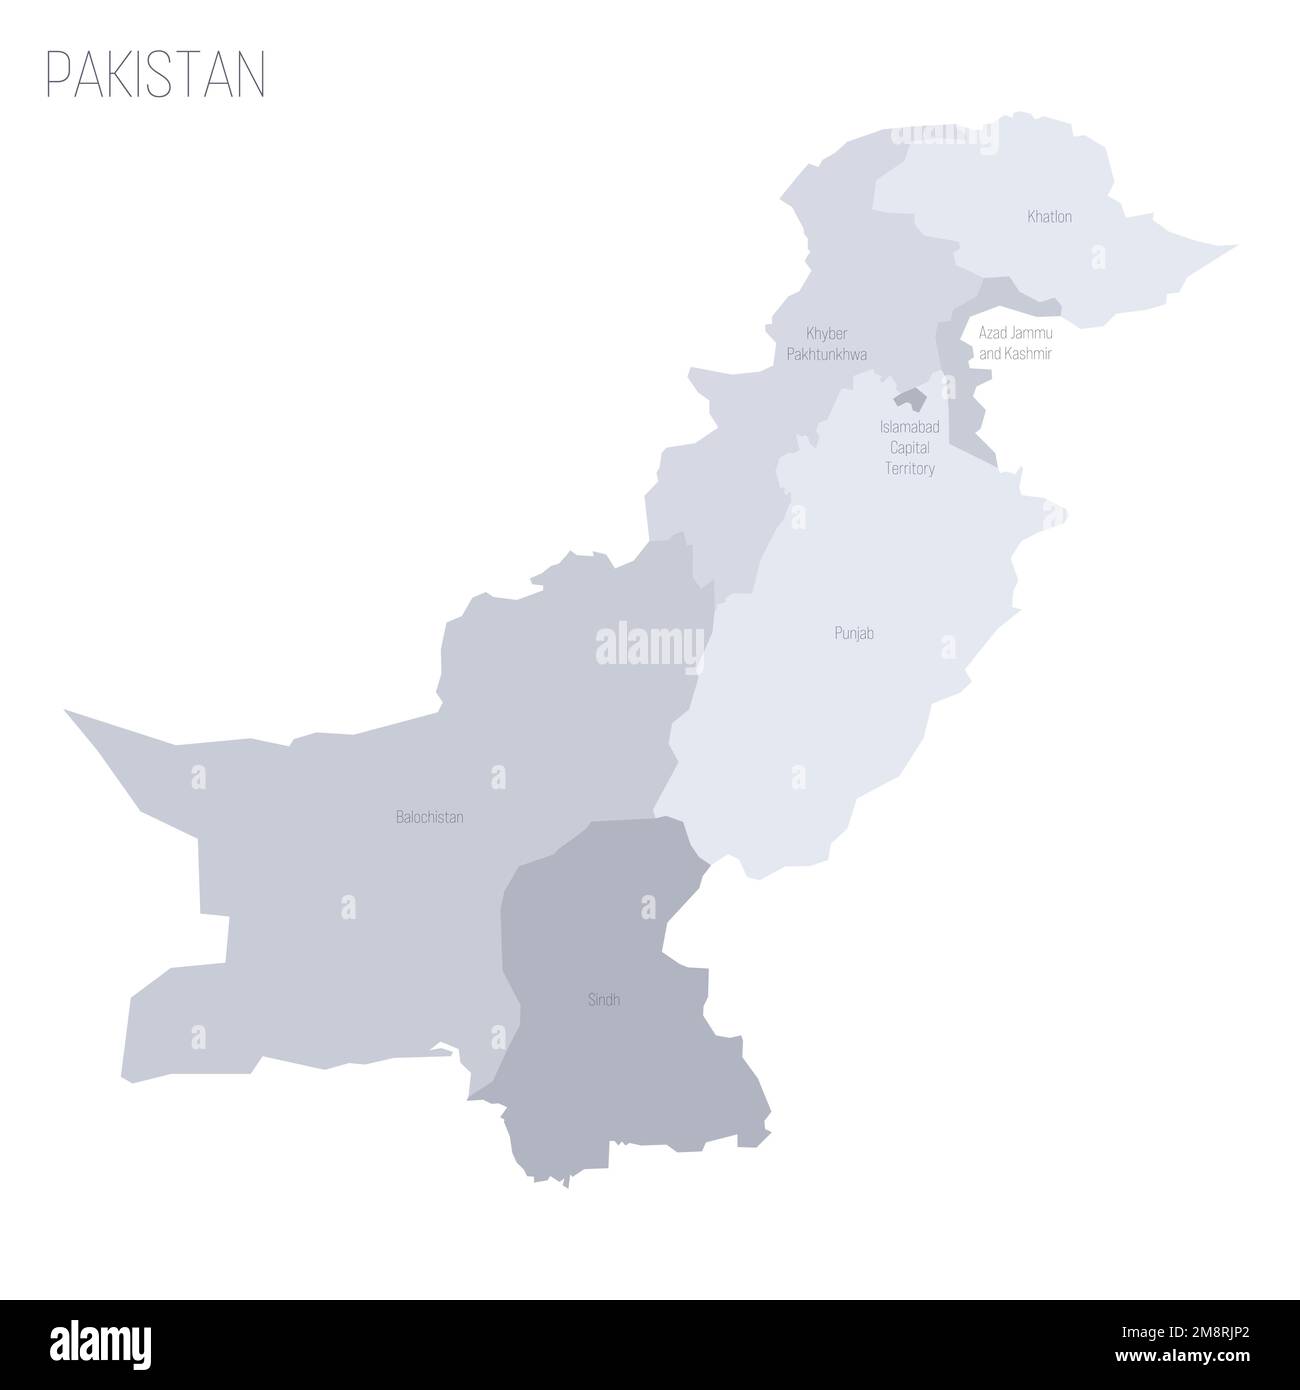 Politische Karte der Verwaltungseinheiten - Provinzen und autonome Gebiete in Pakistan. Graue Vektorkarte mit Beschriftungen. Stock Vektor